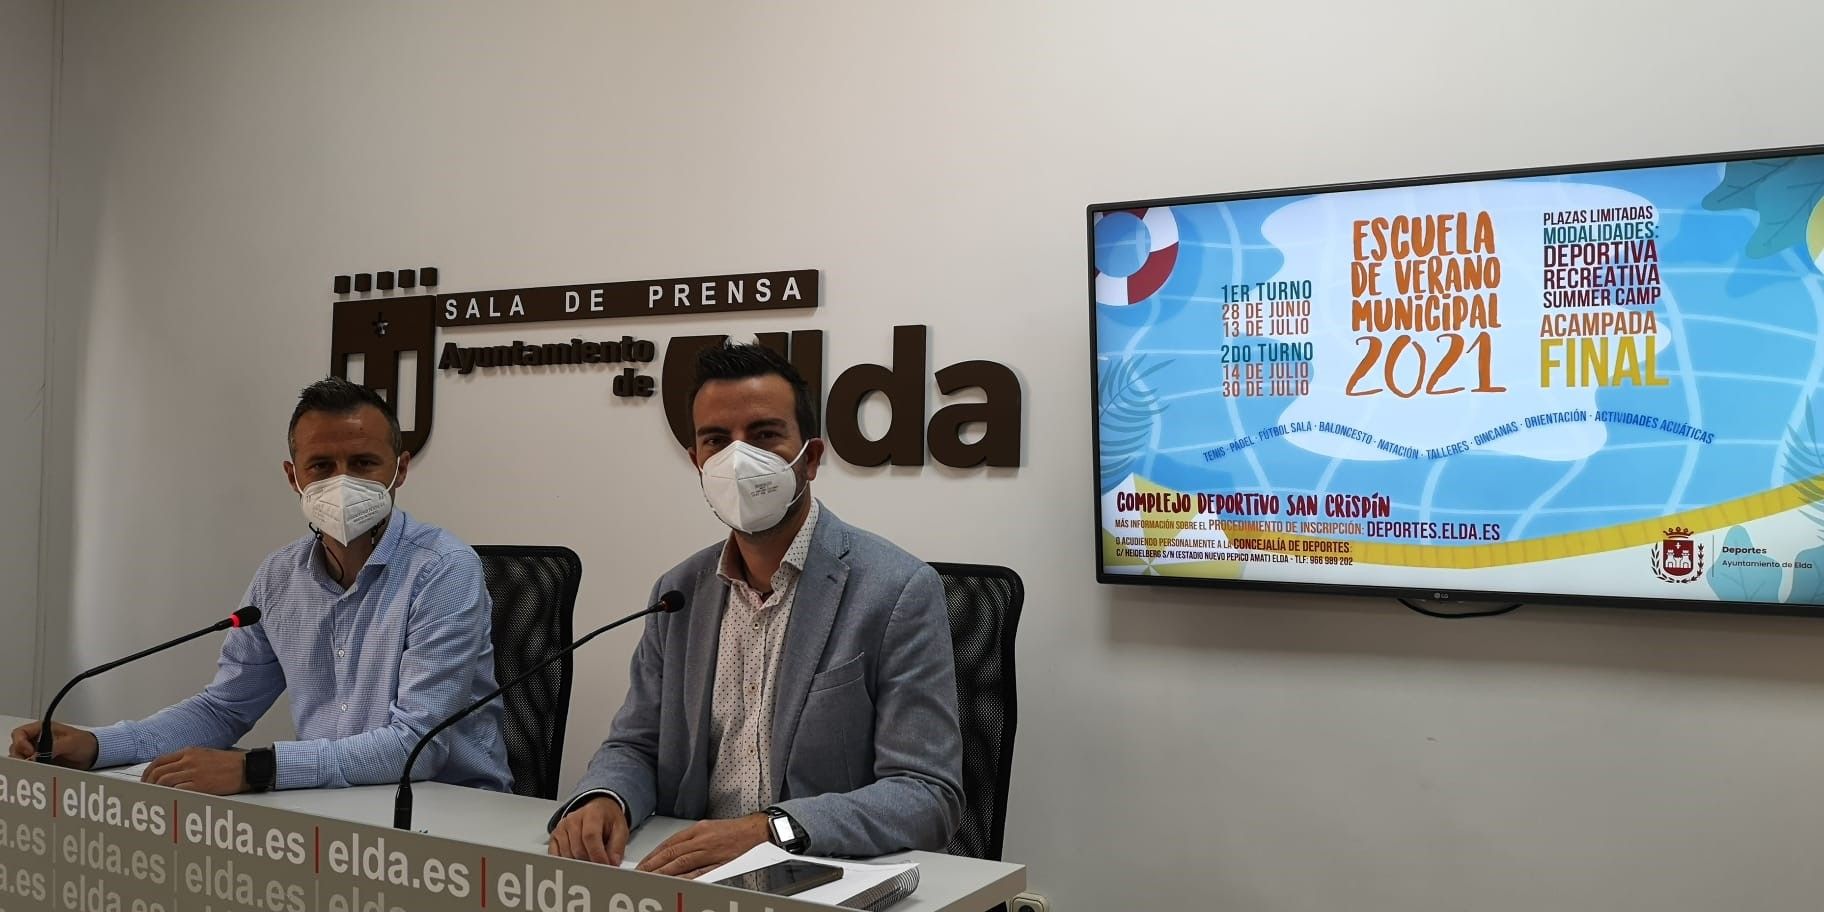 El concejal de Deportes, Fernando Gómez, ha presentado hoy la Escuela Municipal de Verano